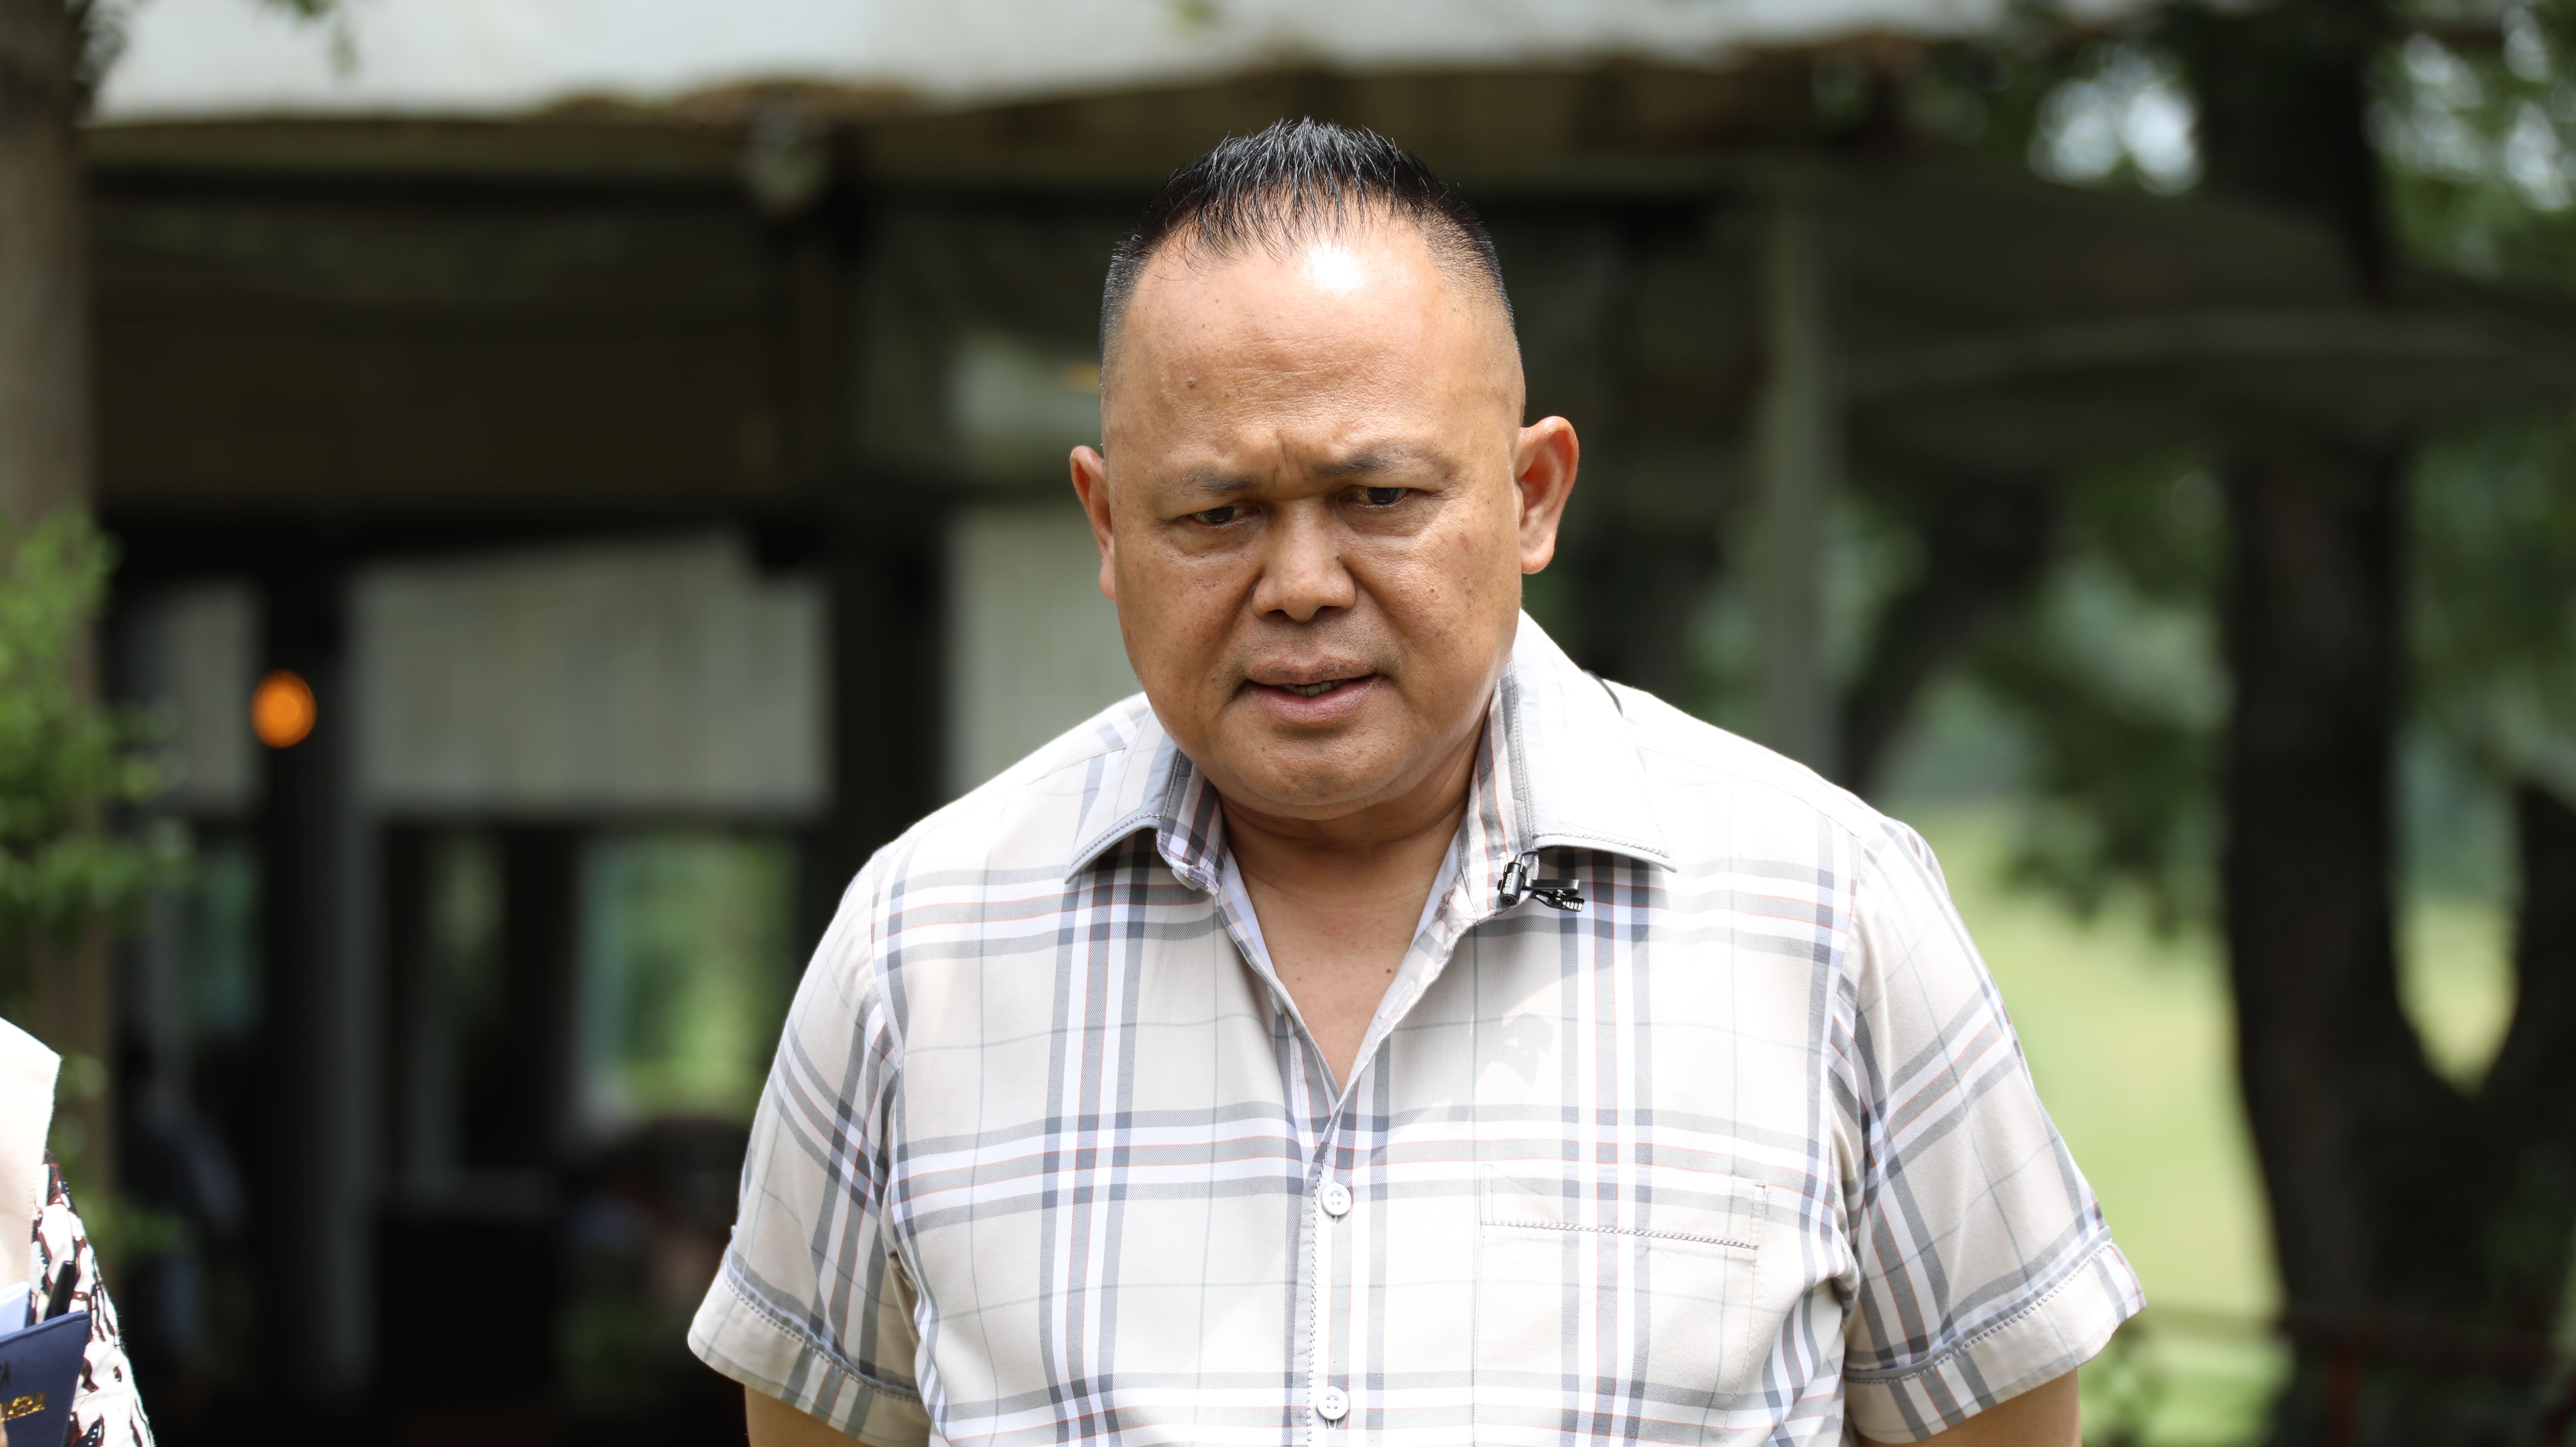 DPRD Jatim Apresiasi Menteri AHY Selesaikan Legalitas Sertifikat Tanah